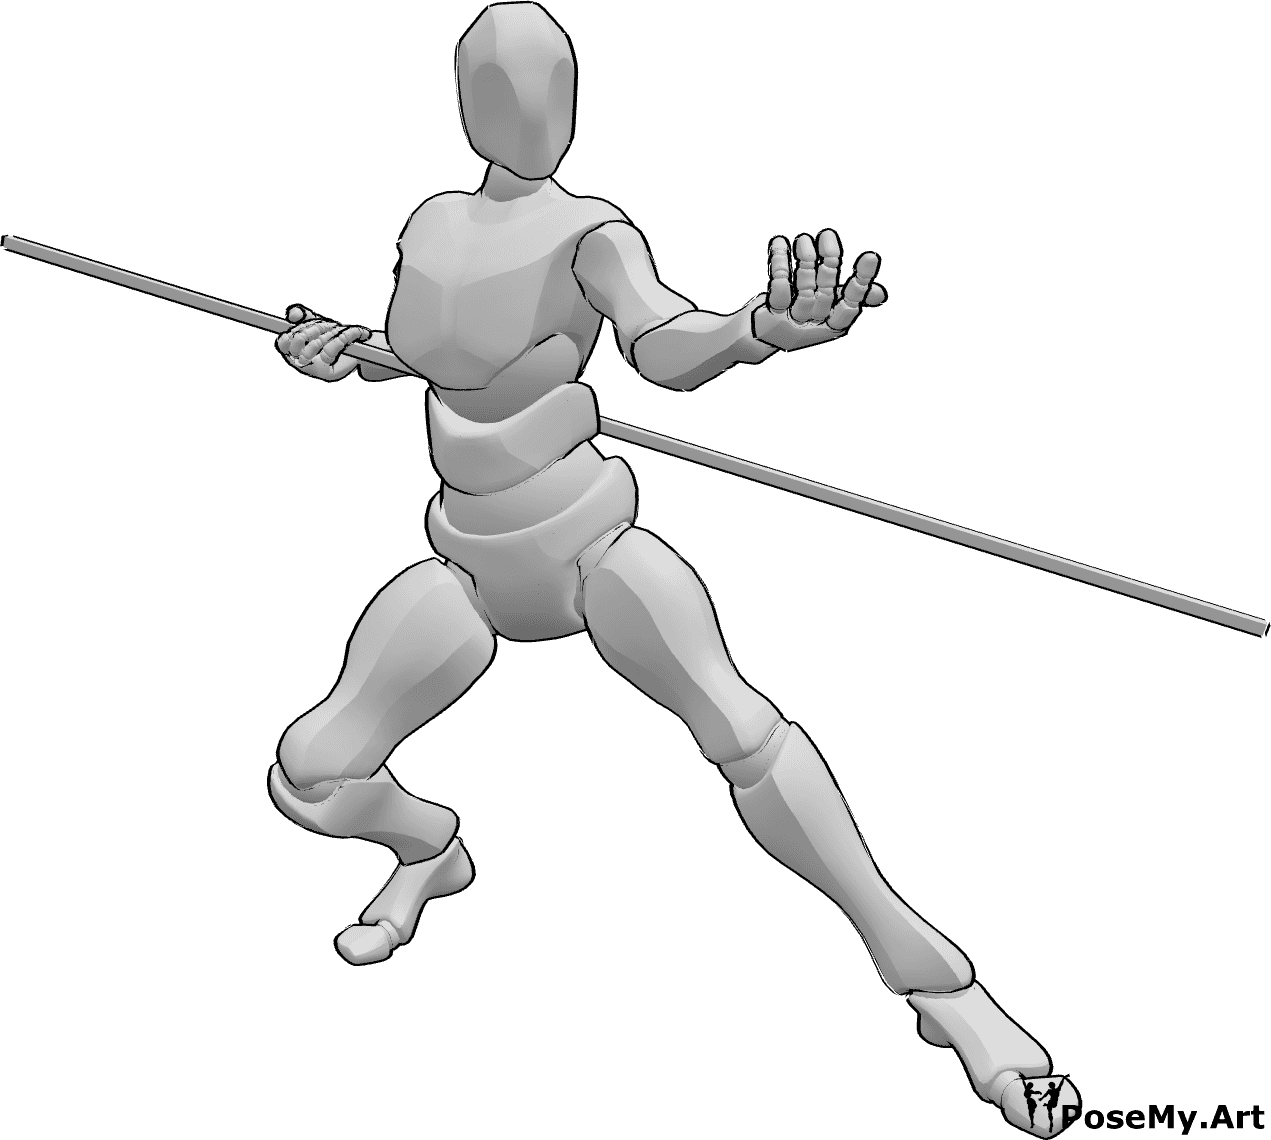 Riferimento alle pose- Uomo invitante in posa da combattimento - Uomo che impugna un bastone e invita alla lotta